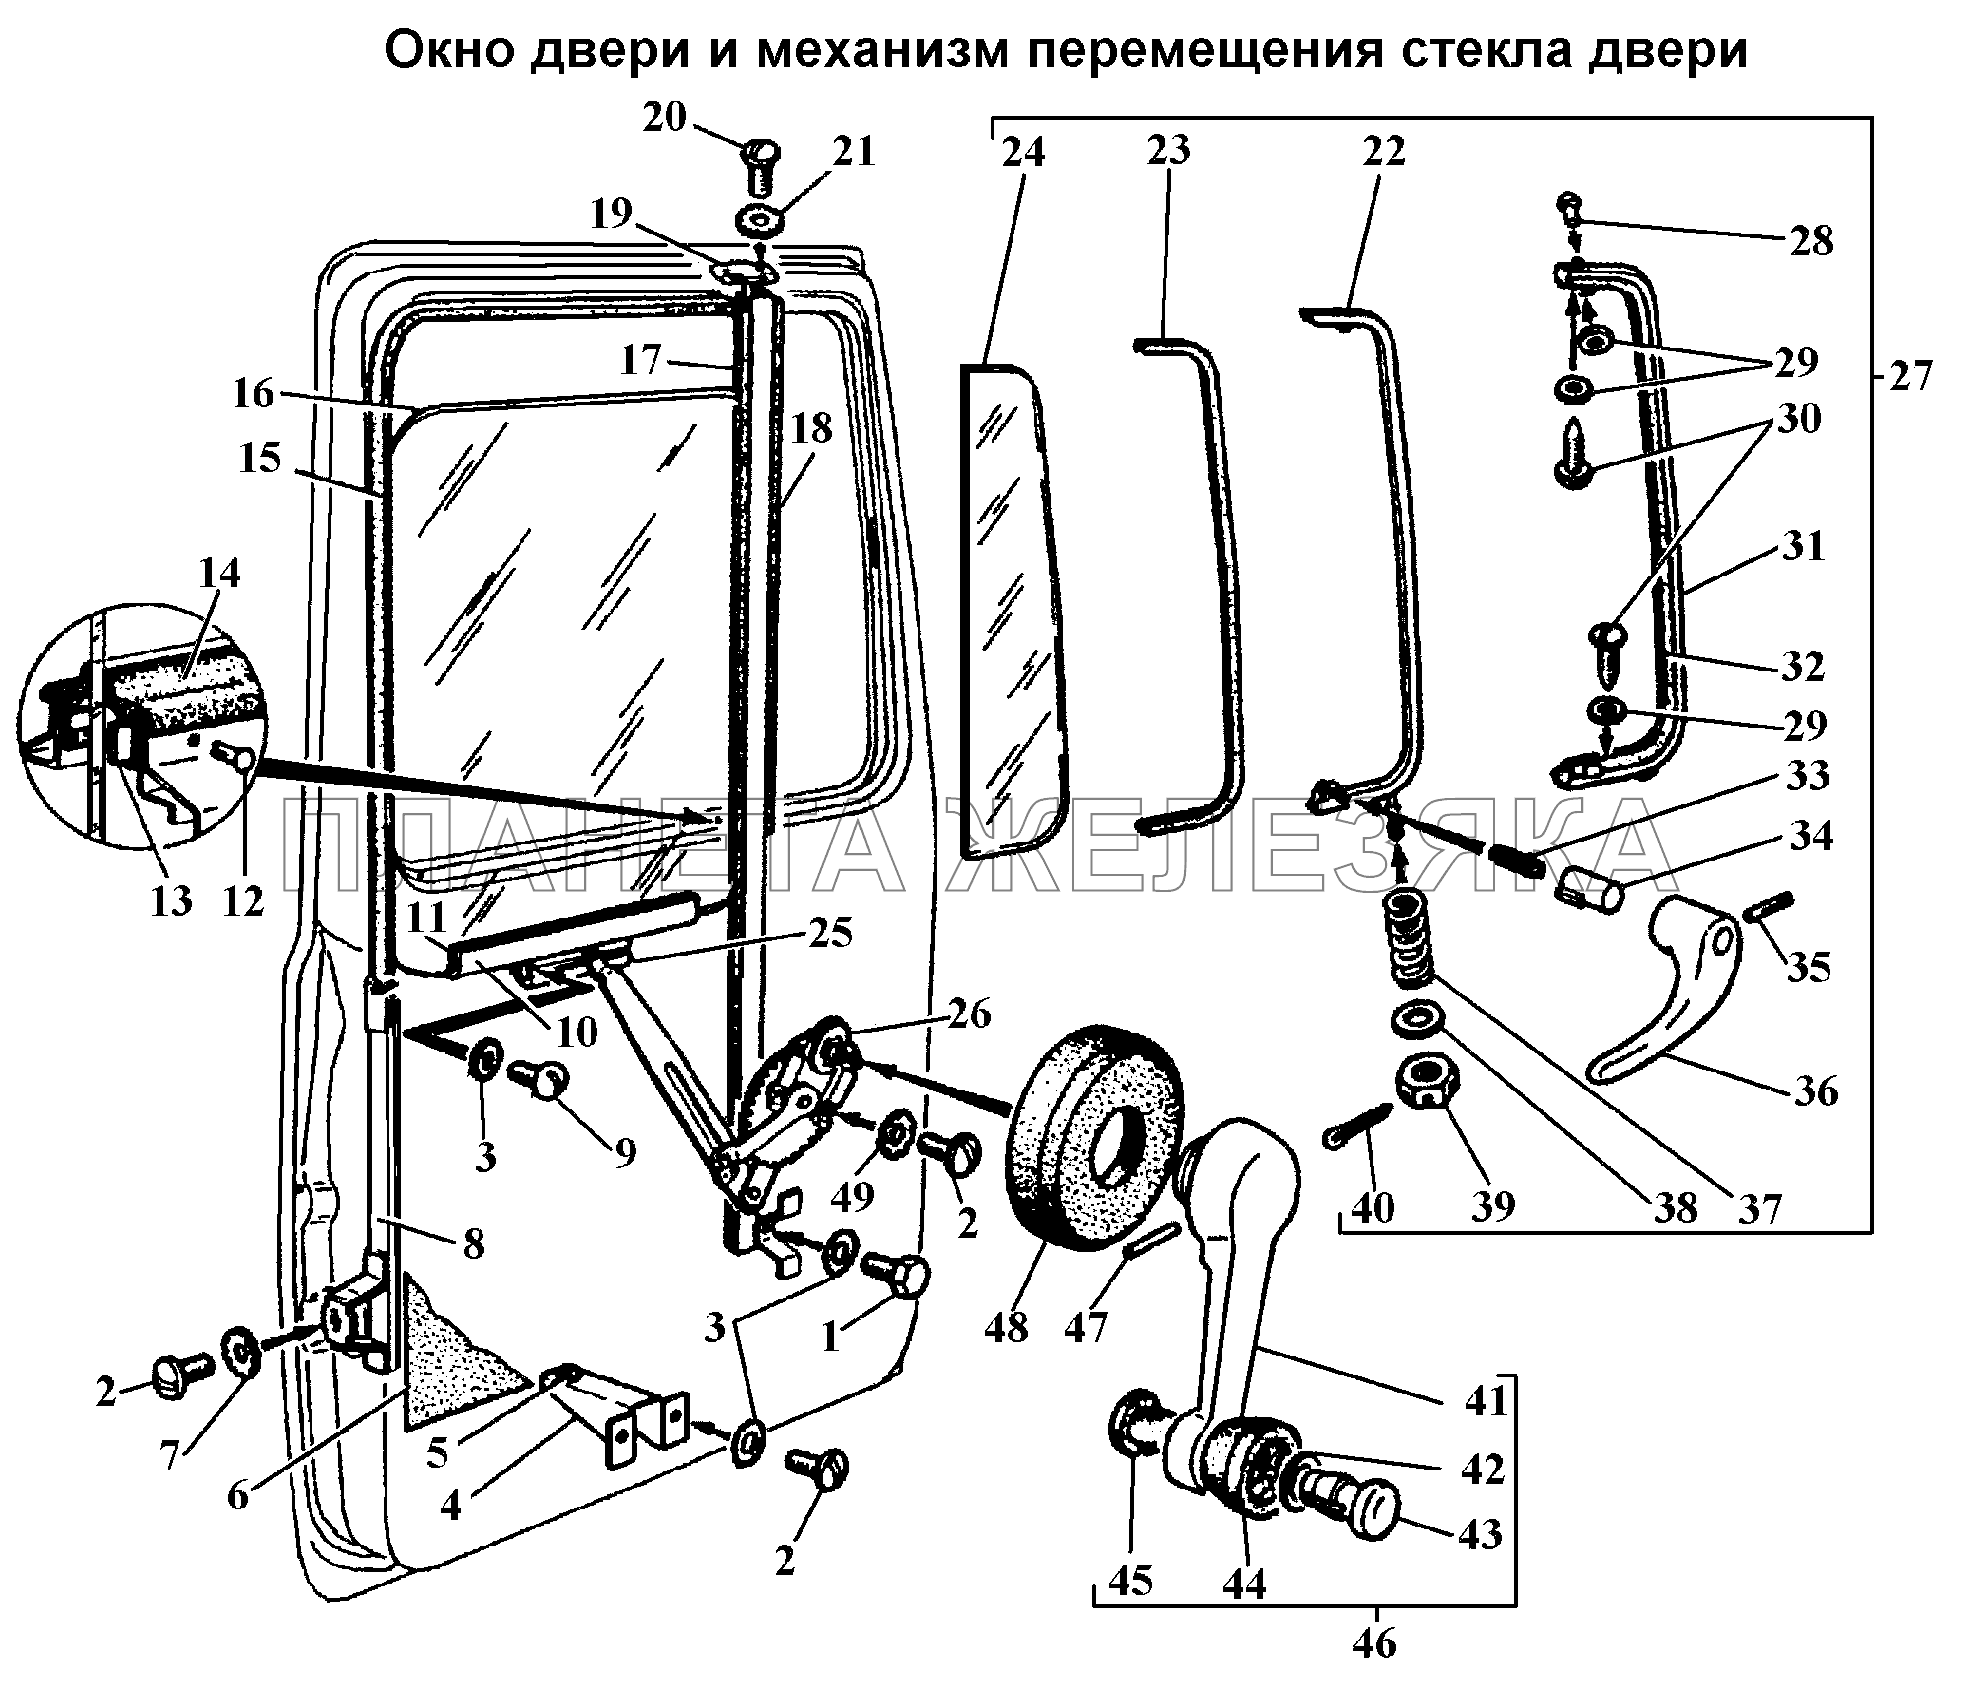 Окно двери и механизм перемещения стекла двери ГАЗ-3308